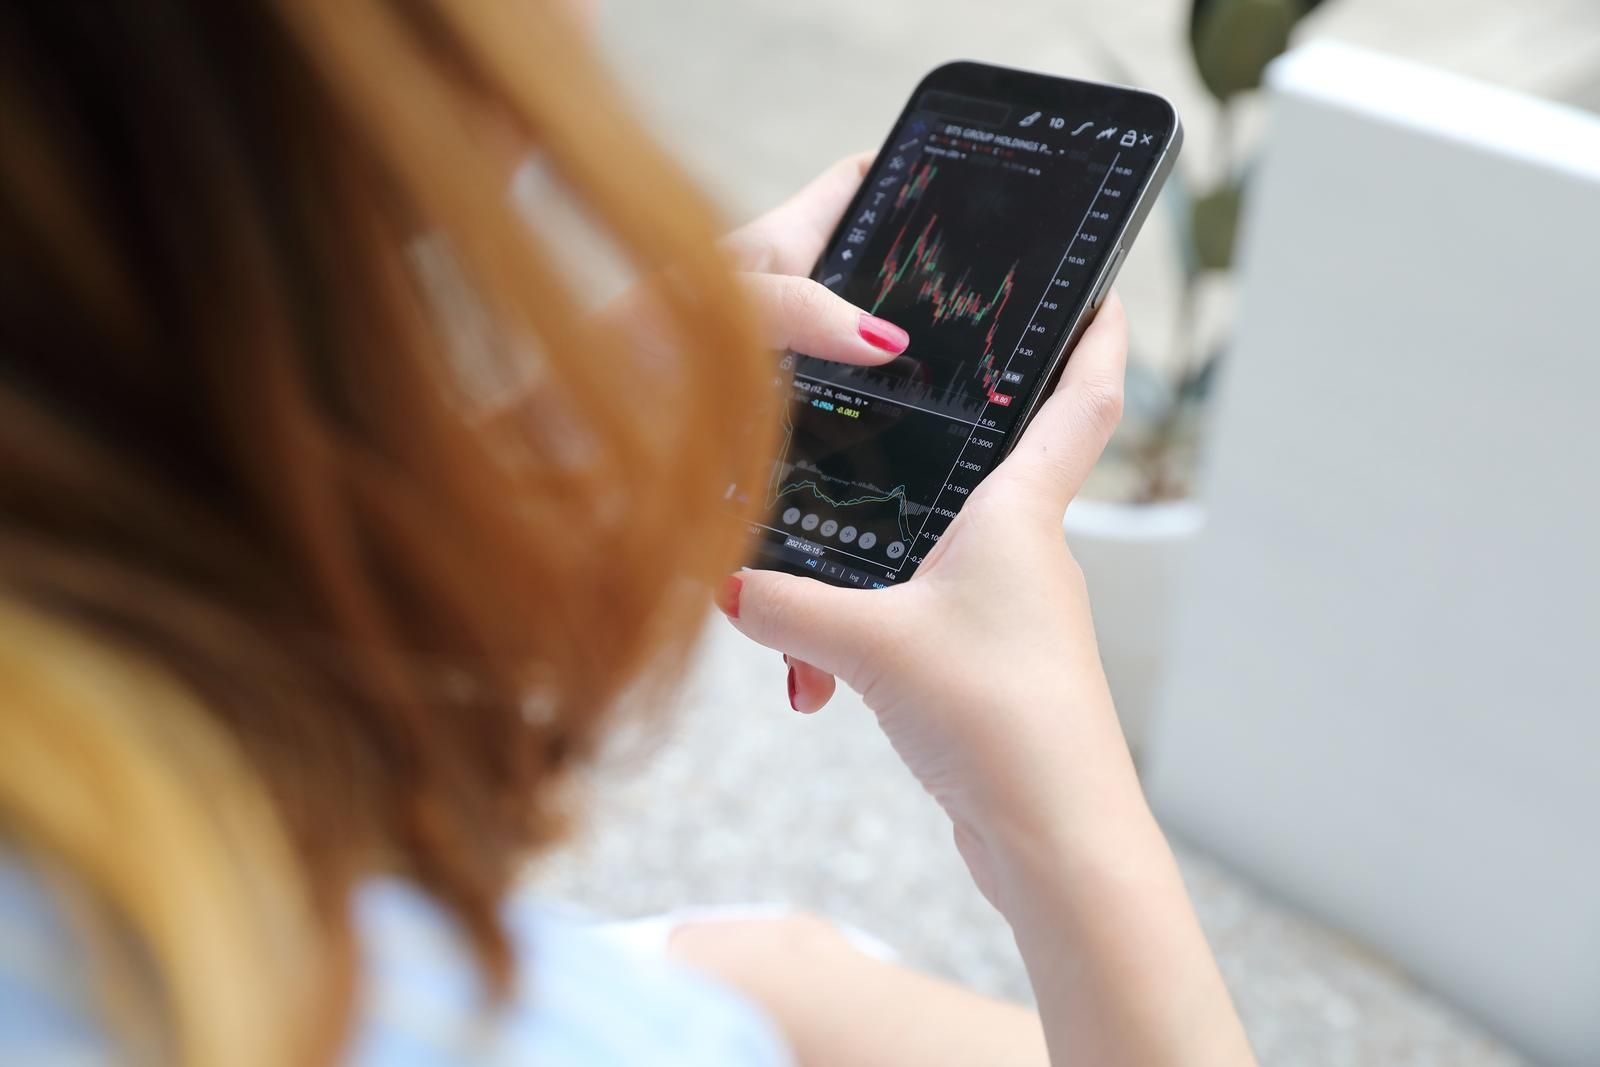 Frau nicht vollständig sichtbar hält ein Smartphone mit Börsen Chartdaten, zur Verdeutlichung der Überprüfung von Wertentwicklungen